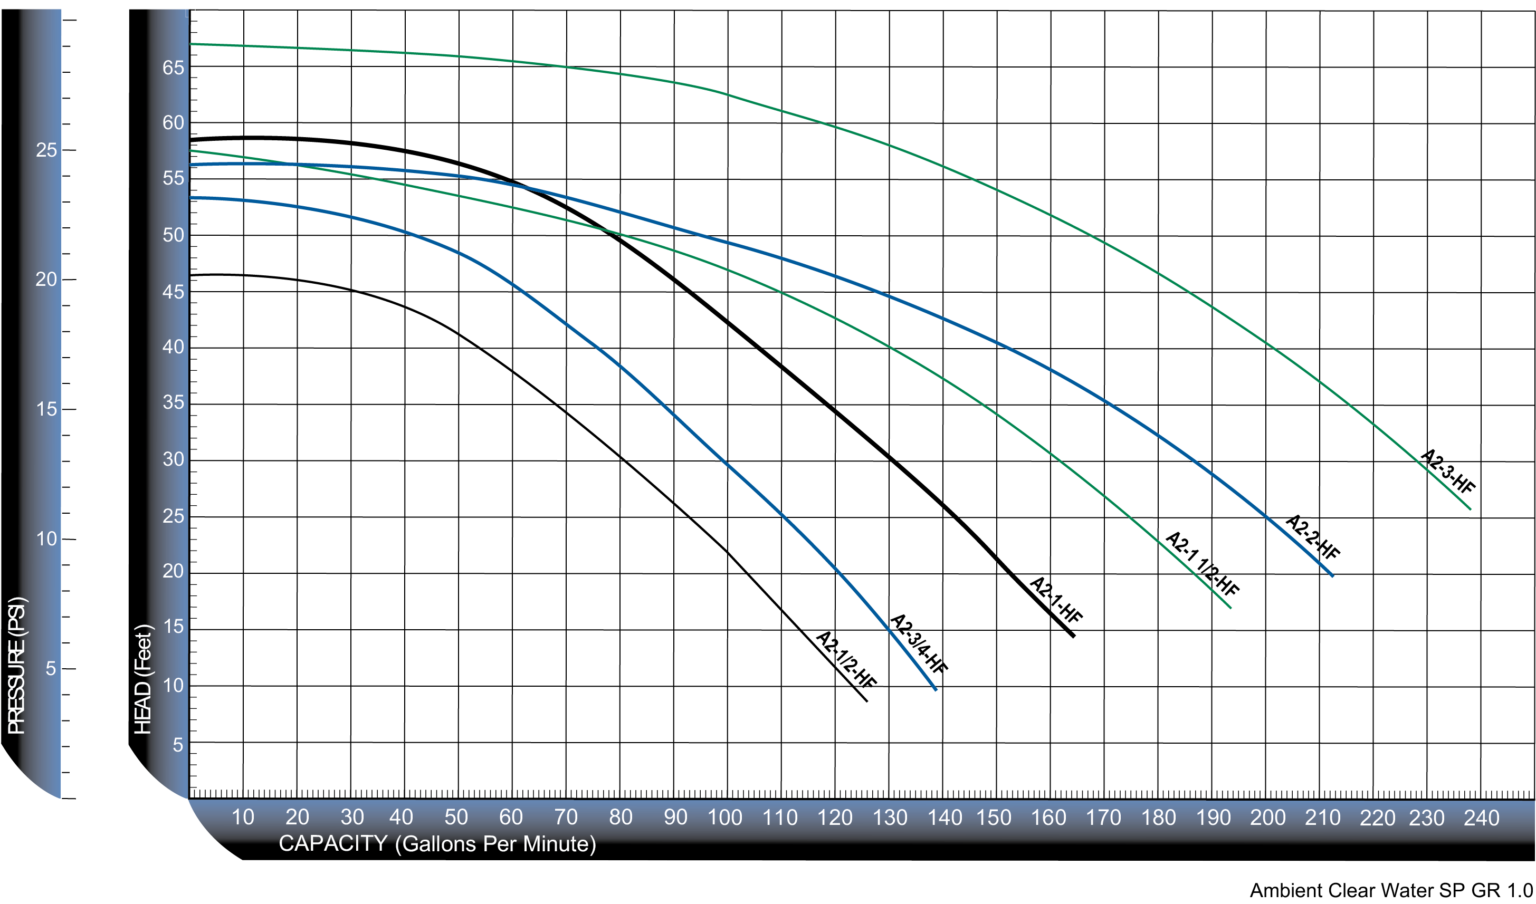 Artesian2 High Flow Curve